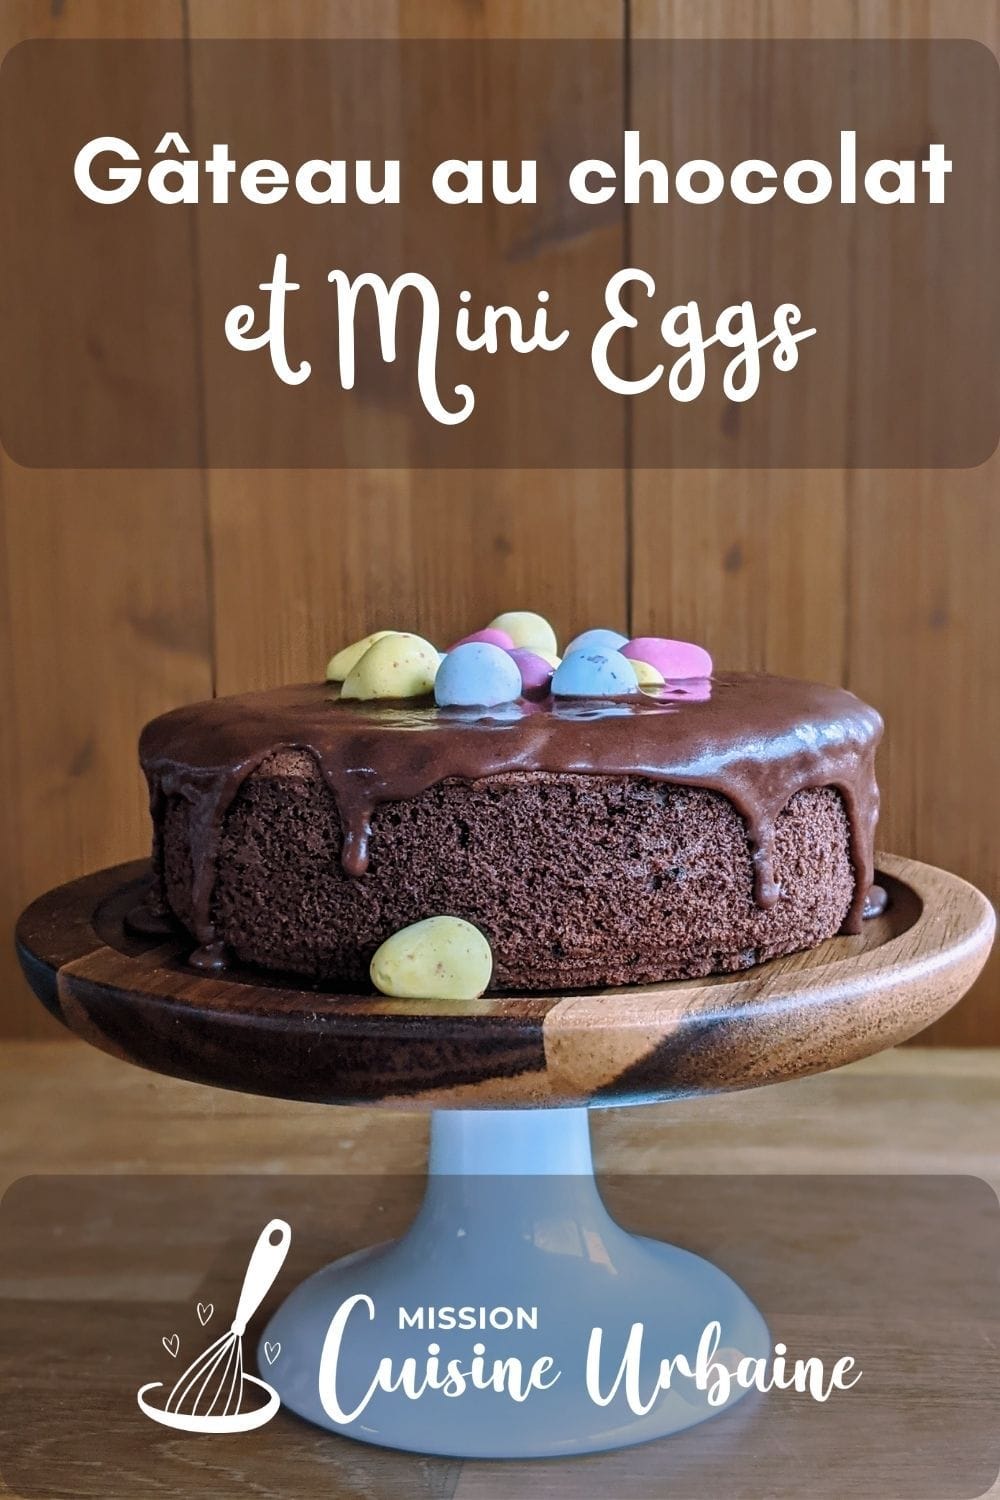 Des mini eggs sur un gâteau au chocolat